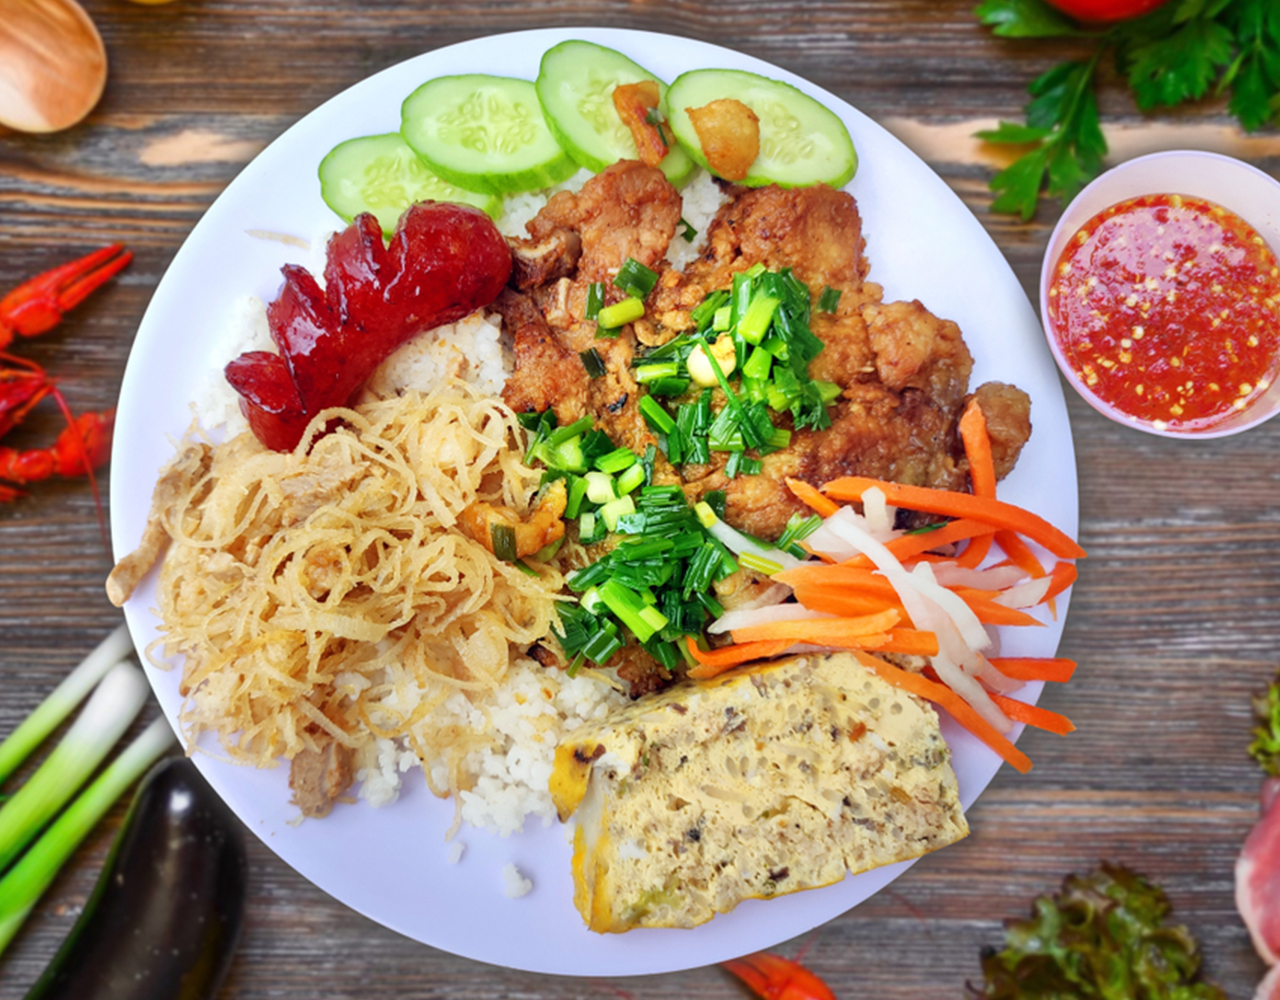 Cơm tấm Sài Gòn: Biểu tượng giao thoa văn hóa ẩm thực giữa phương Đông và phương Tây - ảnh 1